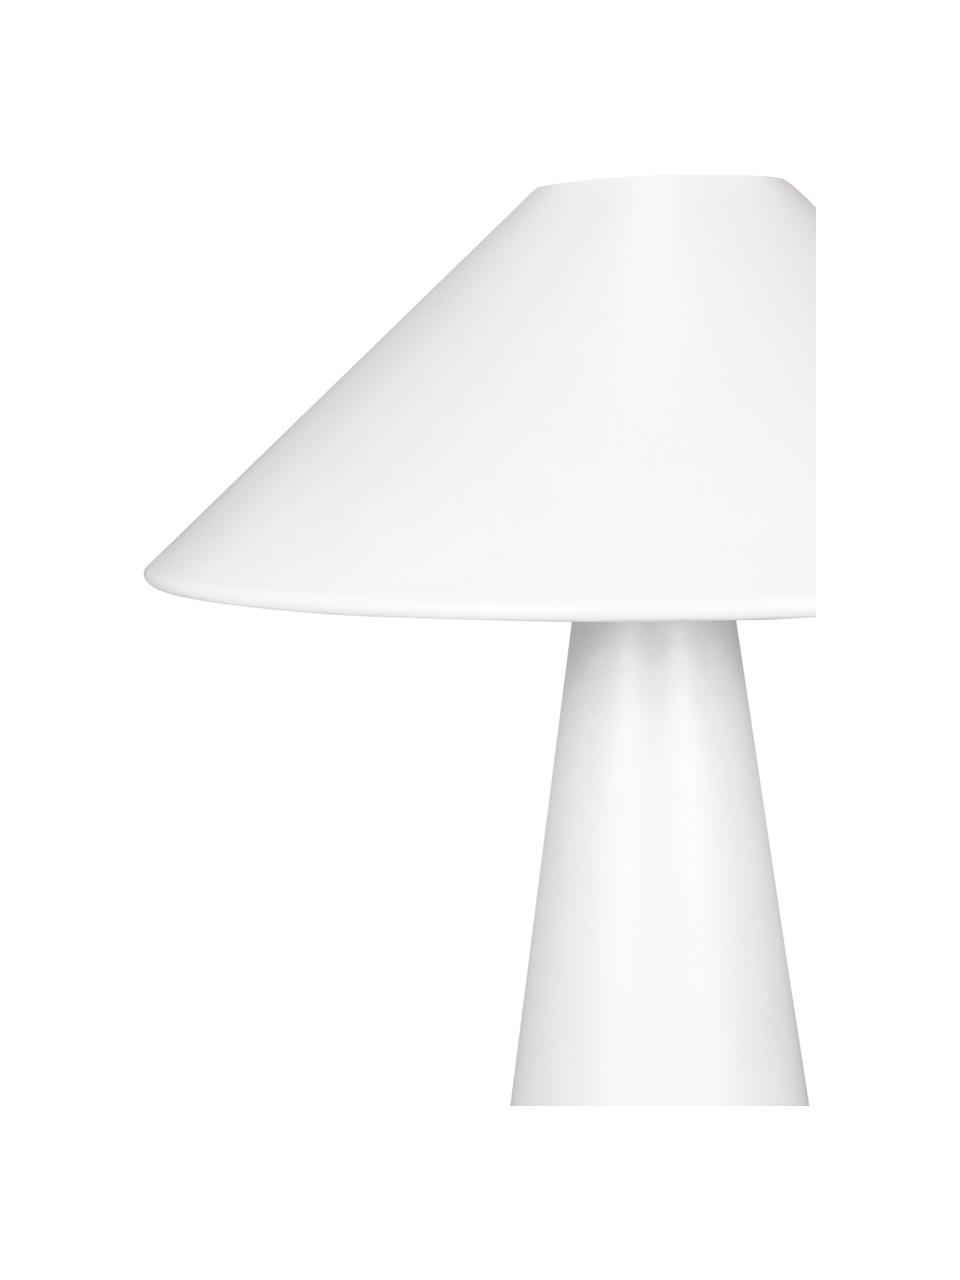 Design Tischlampe Cannes in Weiß, Lampenschirm: Metall, beschichtet, Lampenfuß: Metall, beschichtet, Weiß, Ø 30 x H 40 cm